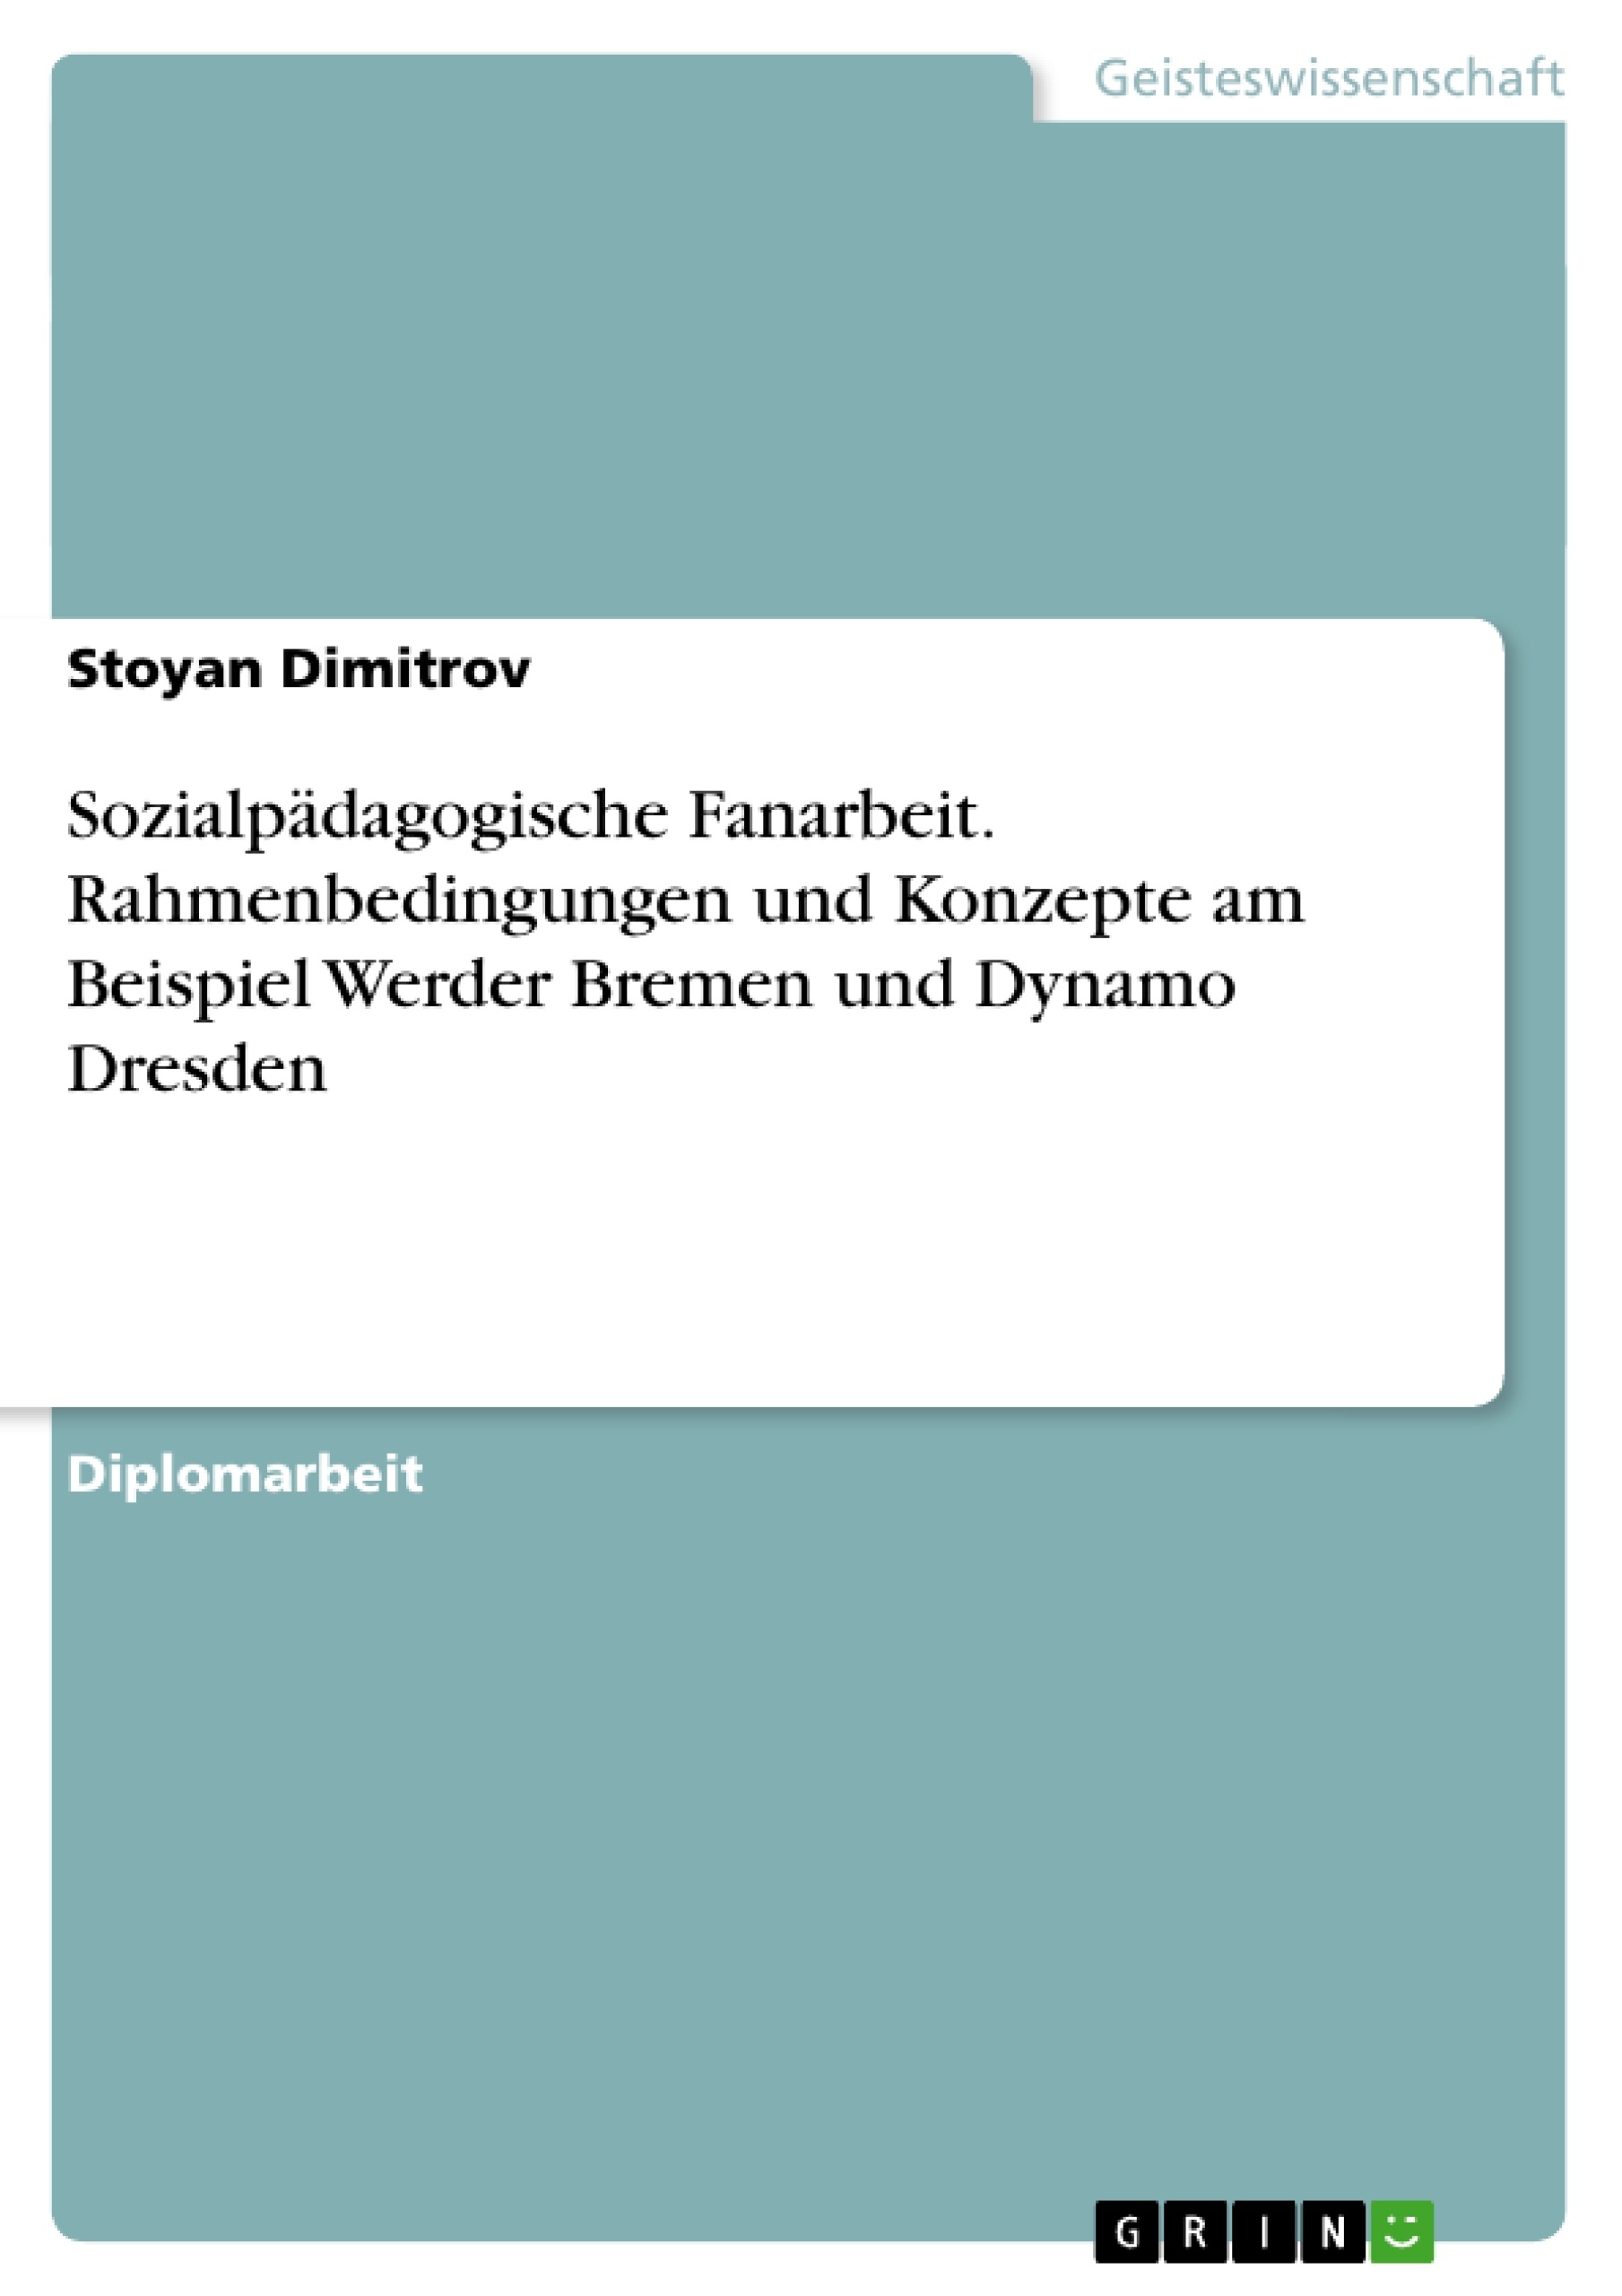 Titre: Sozialpädagogische Fanarbeit. Rahmenbedingungen und Konzepte am Beispiel Werder Bremen und Dynamo Dresden